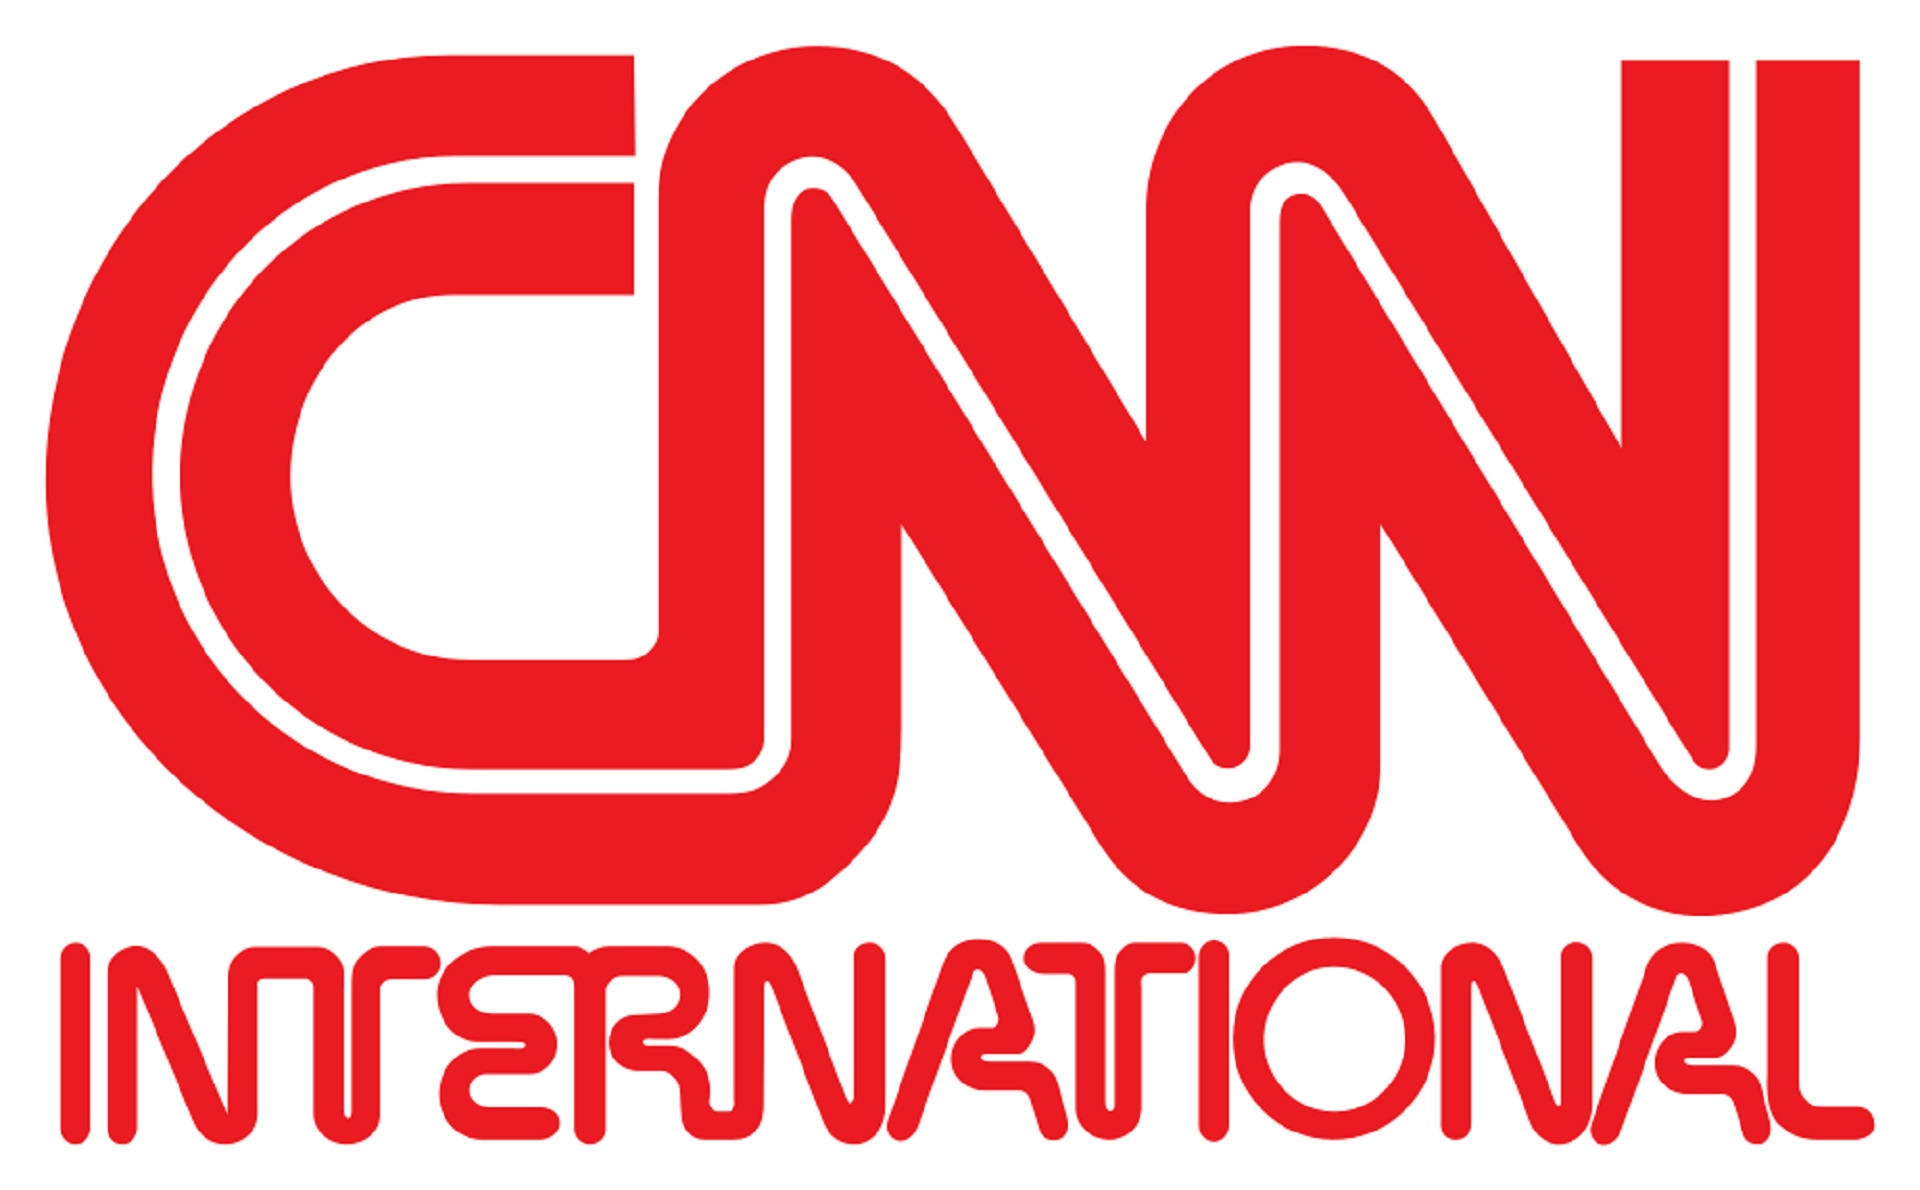 Logotipode Cnn Internacional Fondo de pantalla